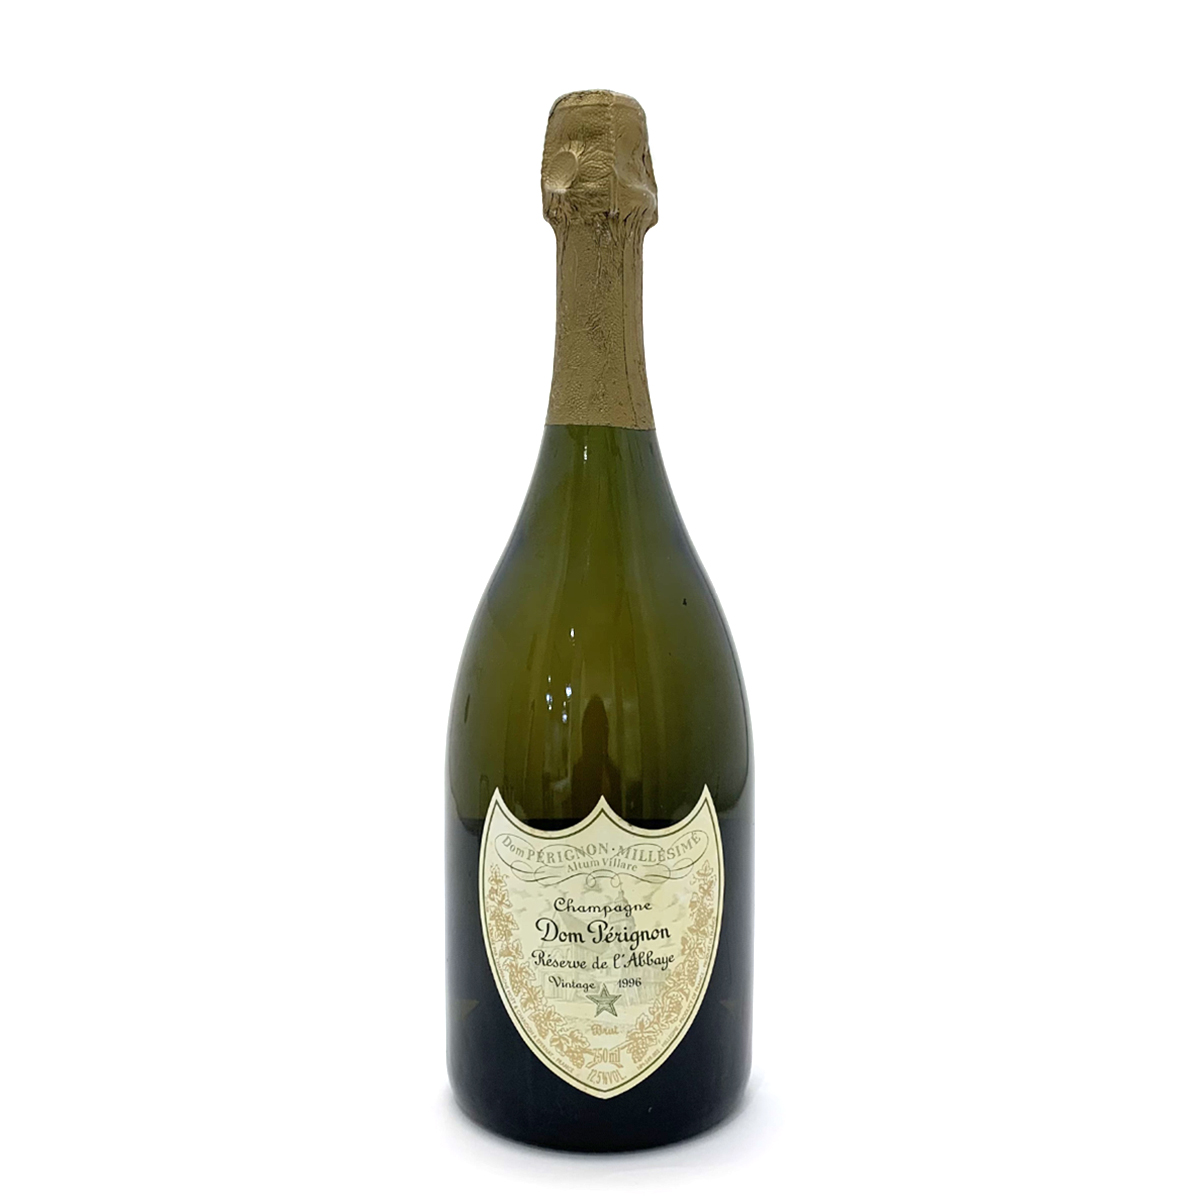 ドン ペリニヨン(Dom Perignon) レゼルヴ ド ラベイ 1996 シャンパン ドンペリ ゴールド 750ml 12.5度